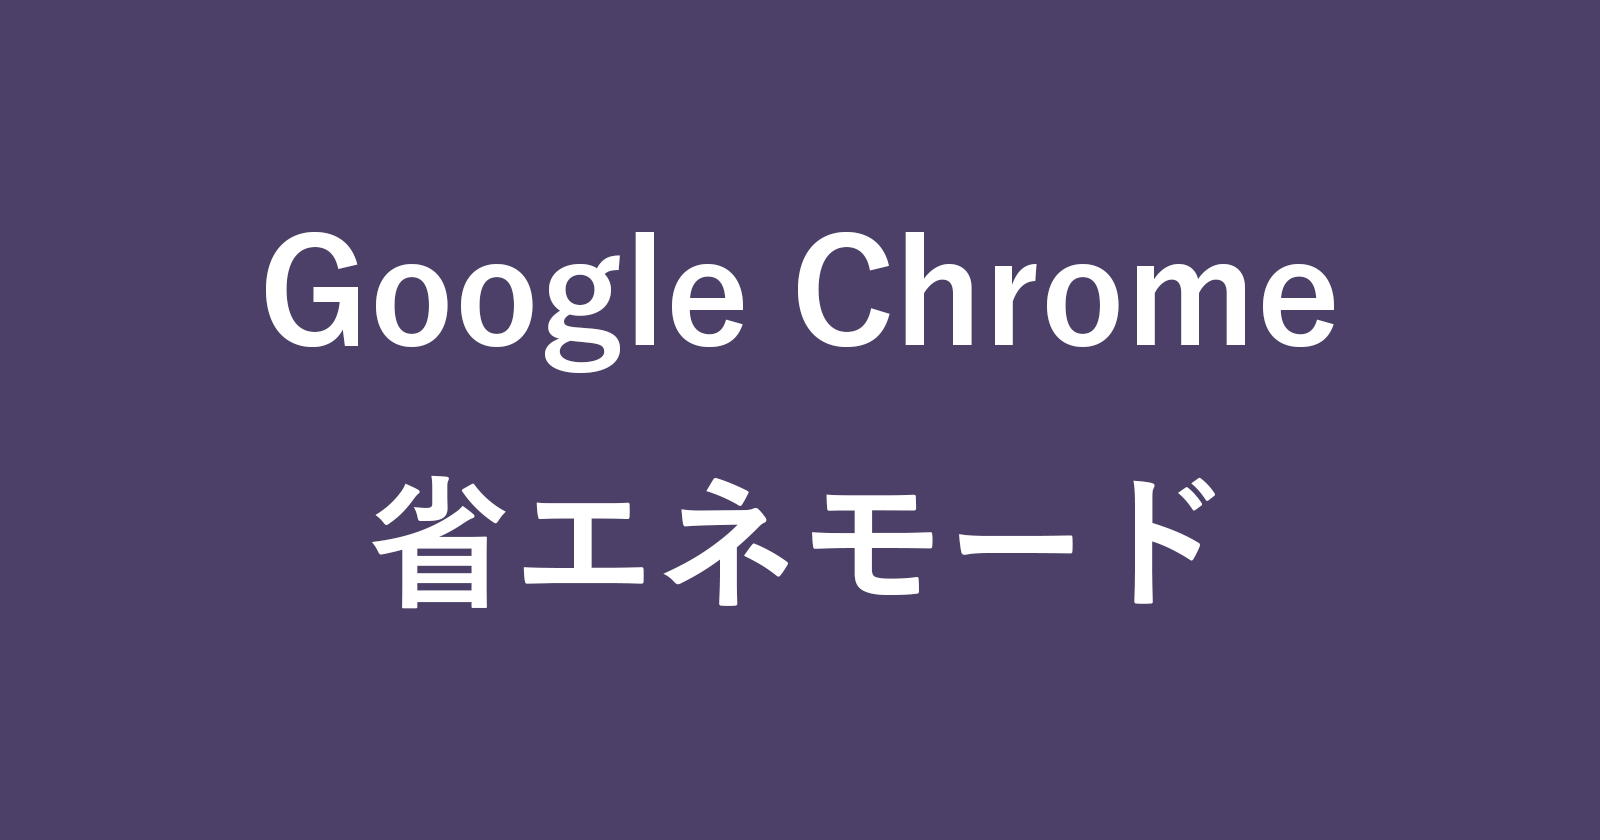 google chrome energy saver mode